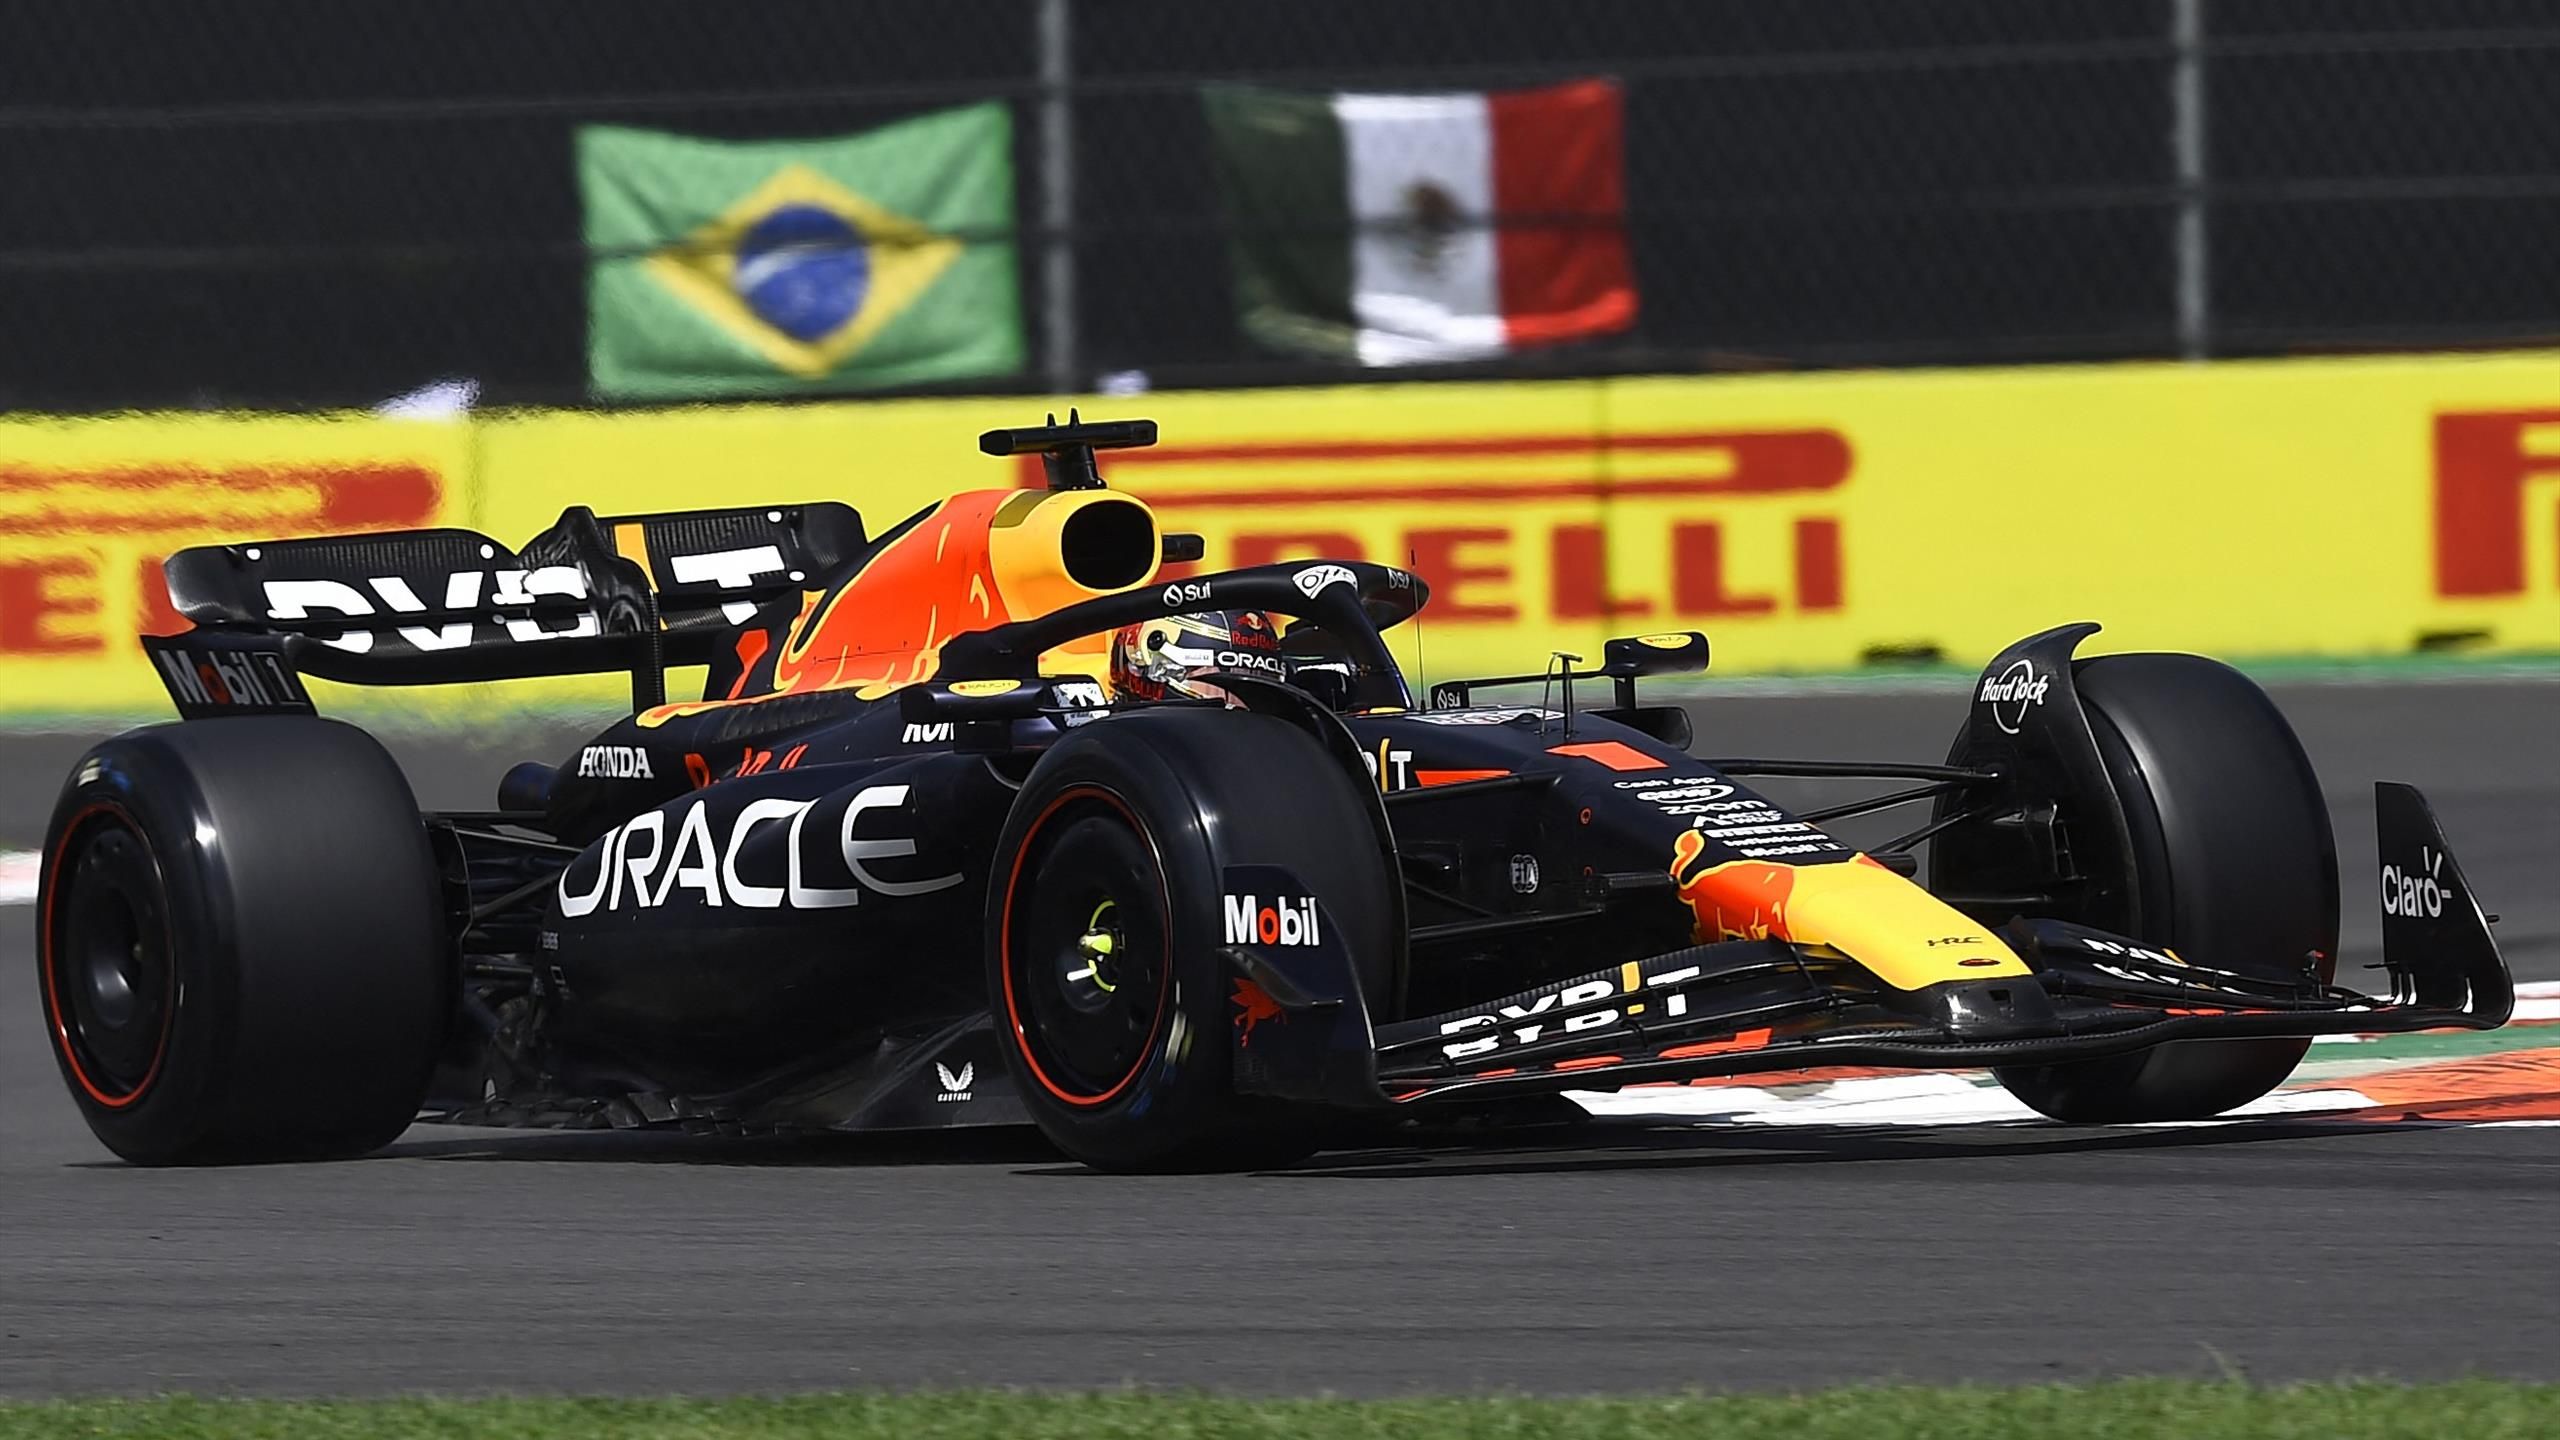 Grand Prix von Mexiko Max Verstappen im Training vorne - Lando Norris überrascht